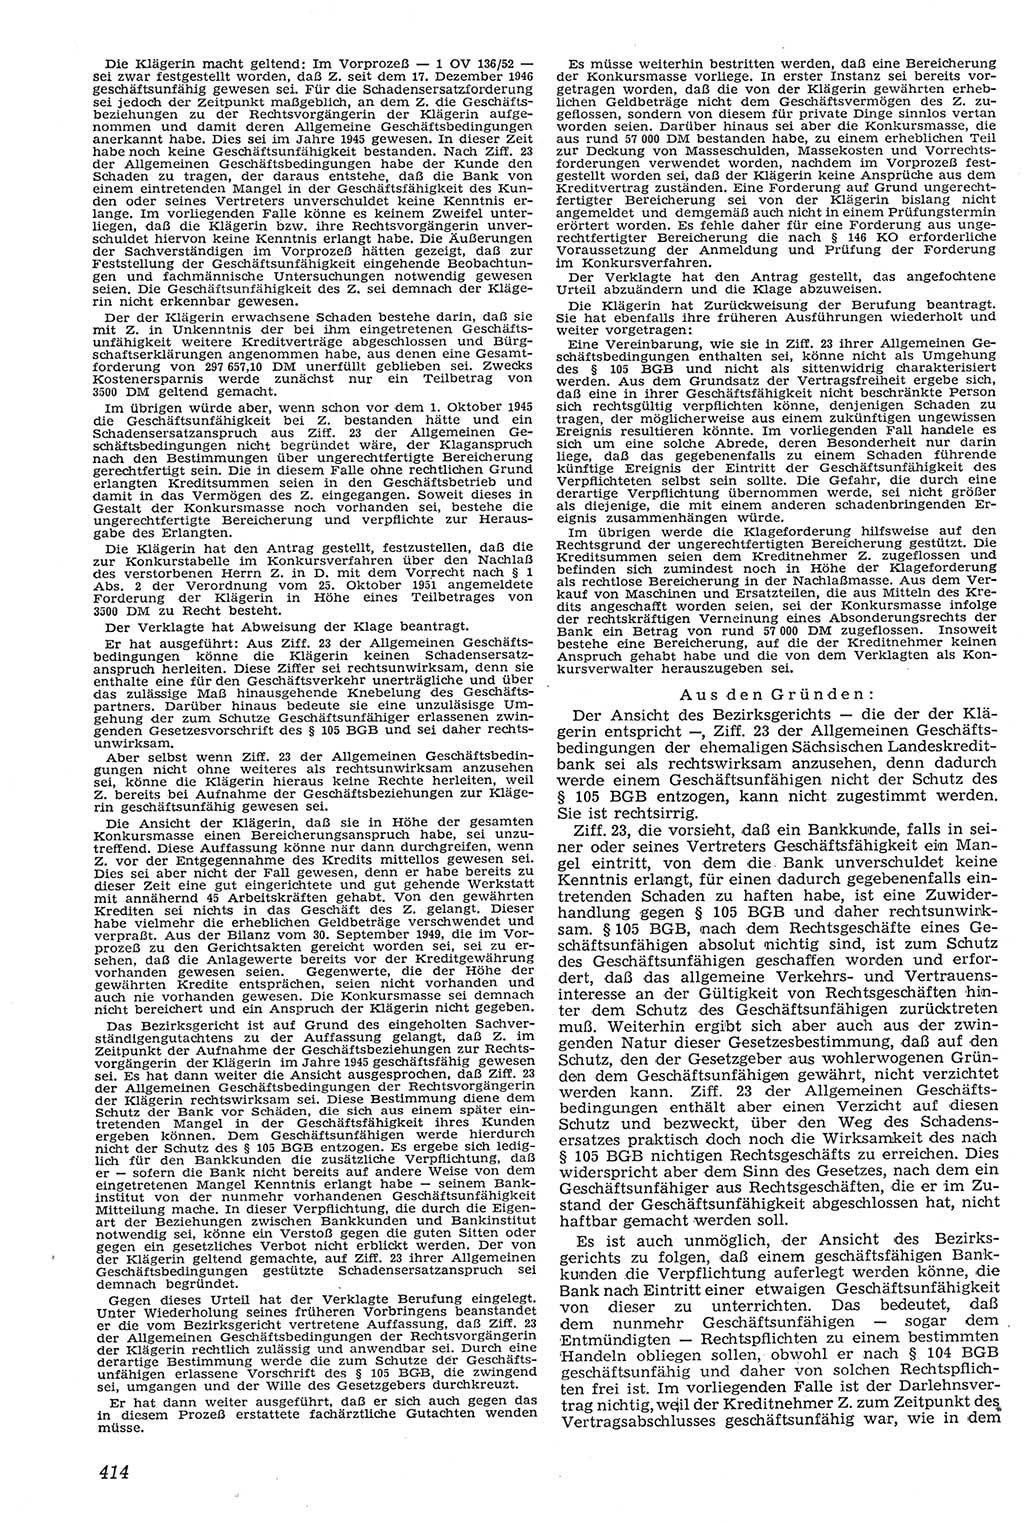 Neue Justiz (NJ), Zeitschrift für Recht und Rechtswissenschaft [Deutsche Demokratische Republik (DDR)], 11. Jahrgang 1957, Seite 414 (NJ DDR 1957, S. 414)